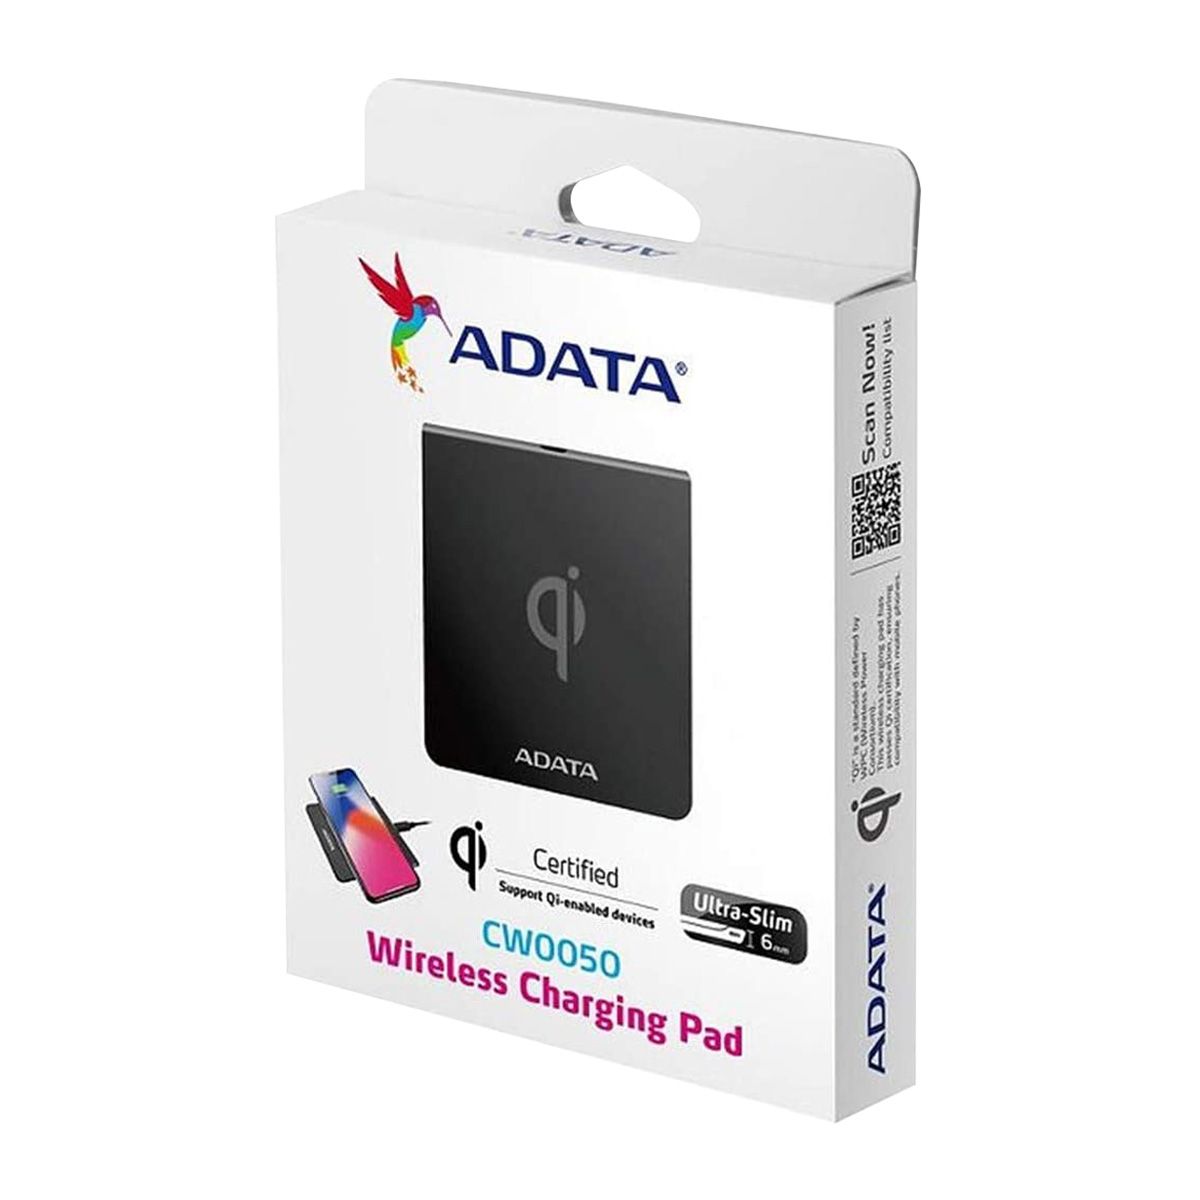 ADATA Wireless Charging Pad รุ่น CW0050 แท่นชาร์จไร้สาย รองรับ iPhone- Android